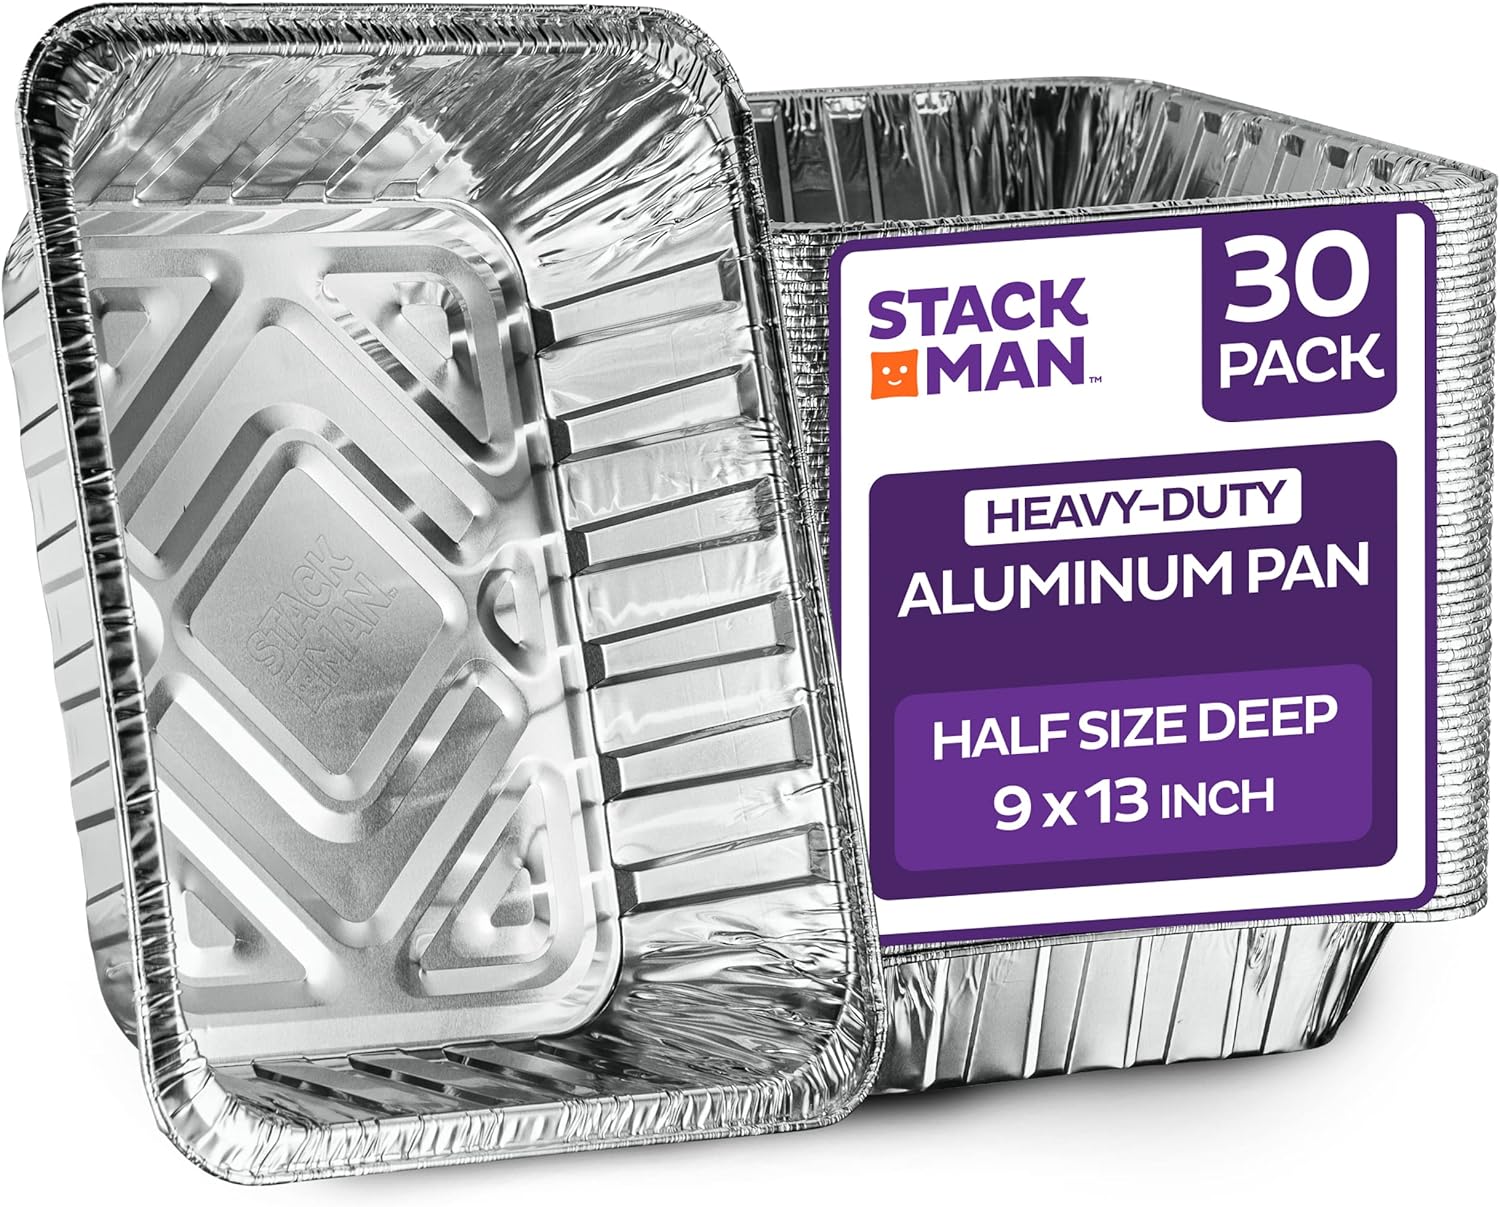 9X13 Disposable Aluminum Foil Baking Pans Half Size Steam Table Deep 30 Pack 